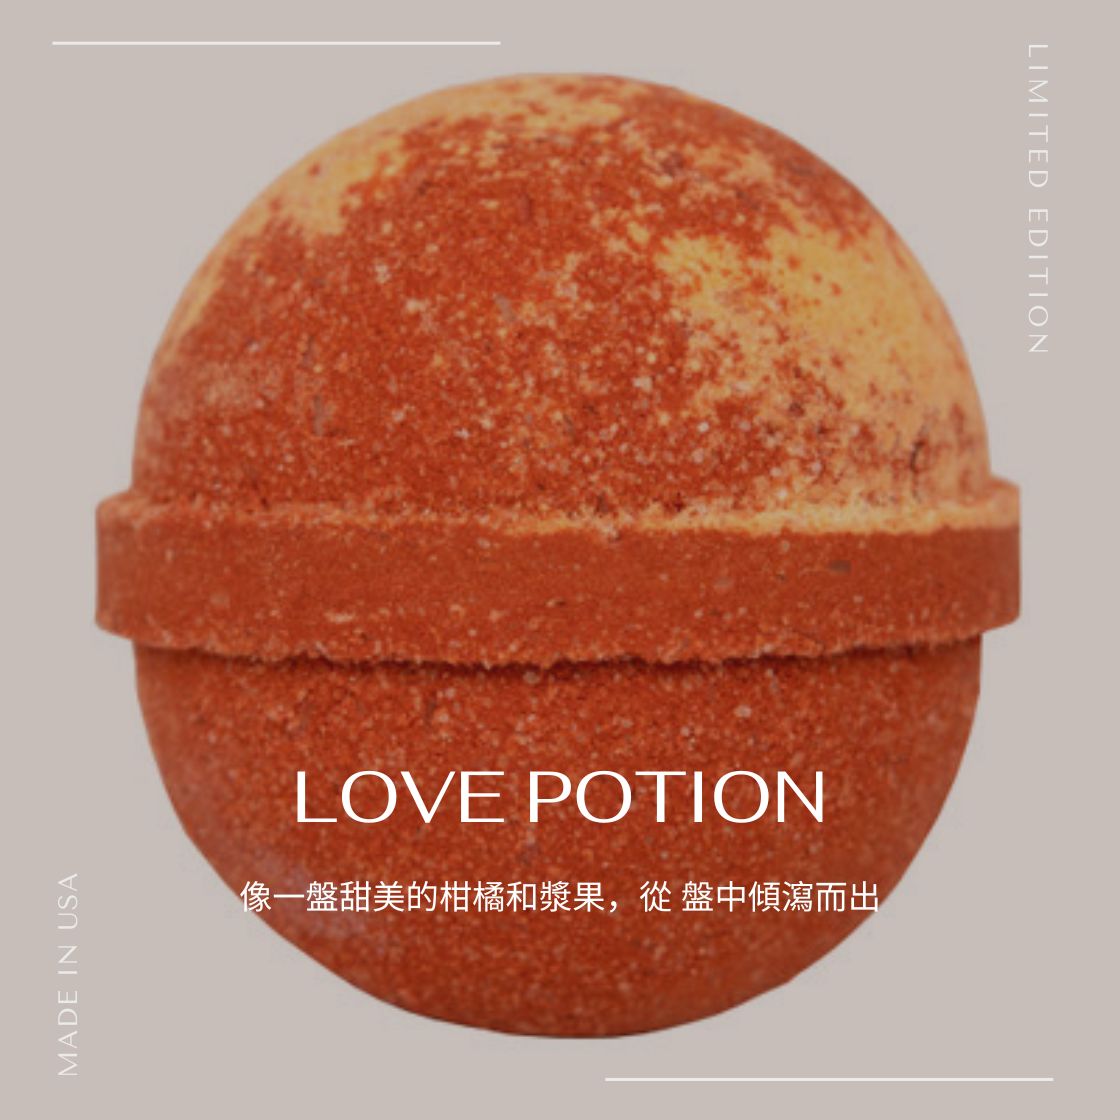 Love Potion - 沐浴汽泡彈 Bathbomb | 沒有浴缸也可來一個香薰浴